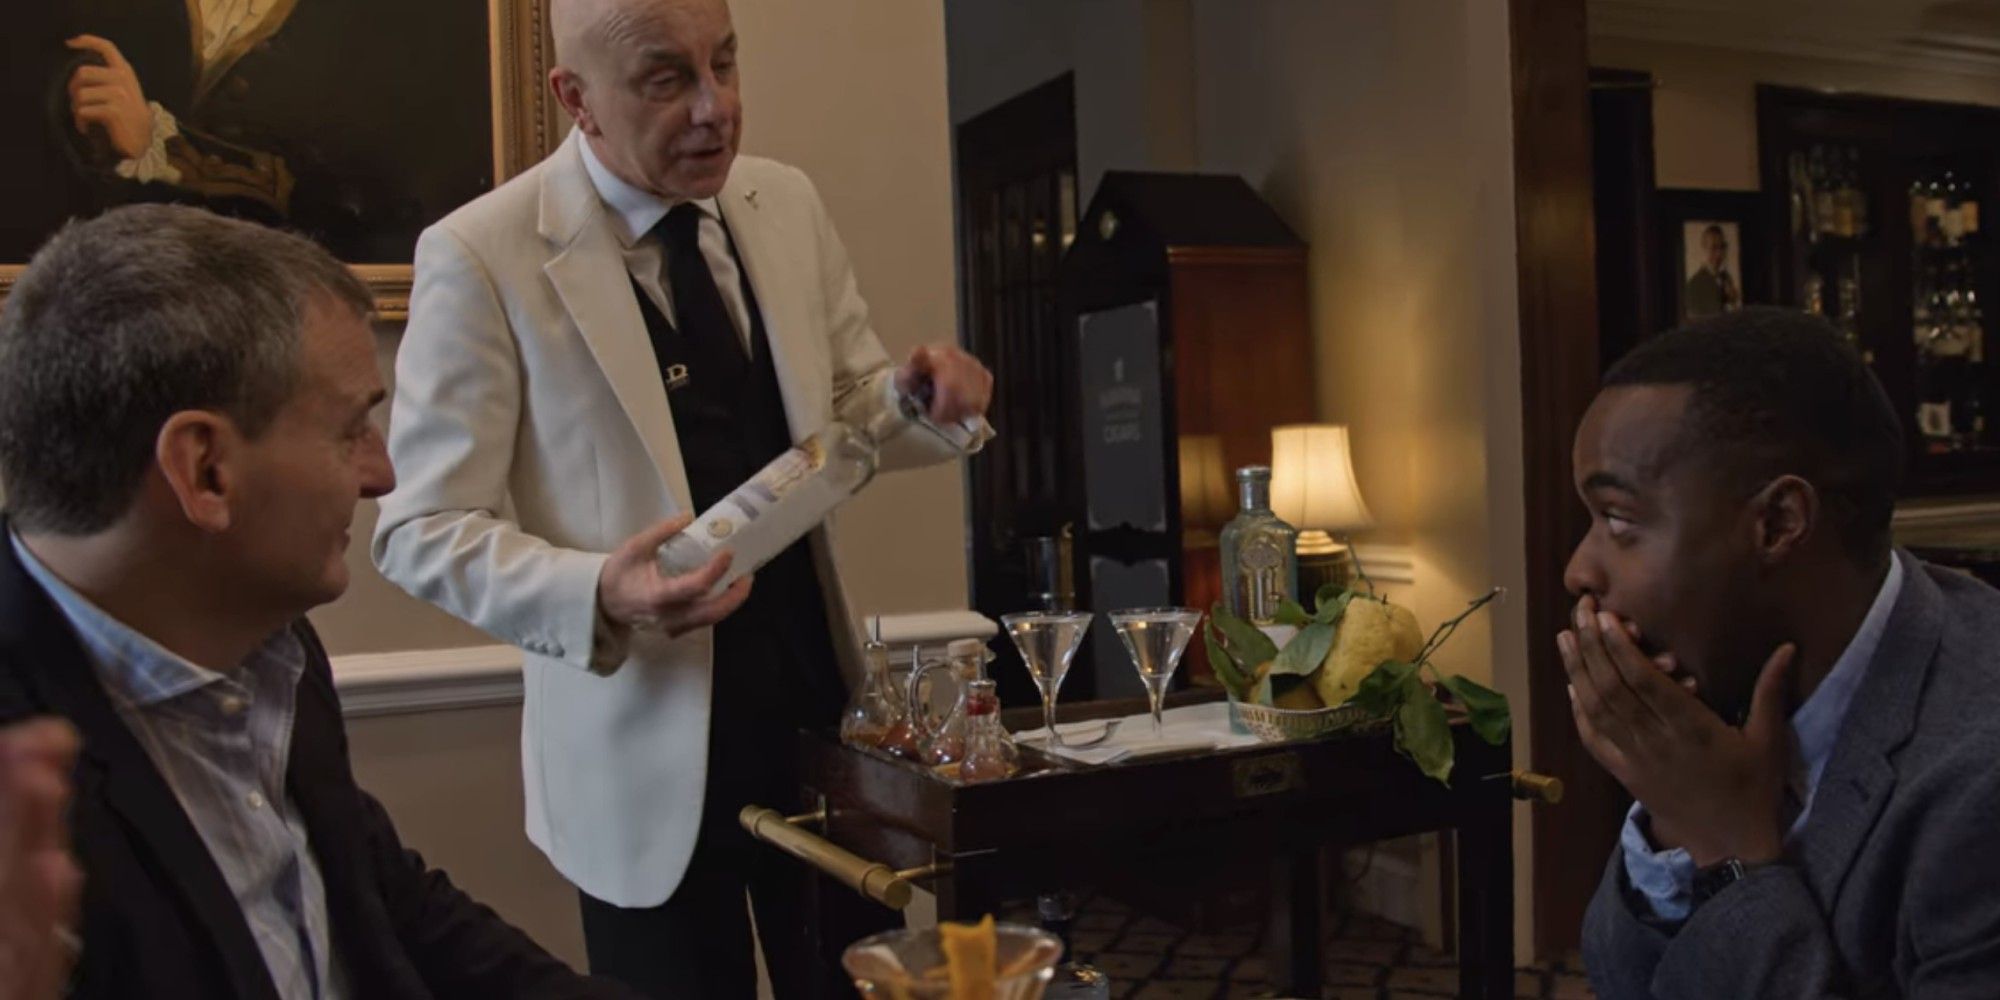 Mesa sendo presenteada com vinho no Dukes London no episódio 3 da 3ª temporada de Somebody Feed Phil